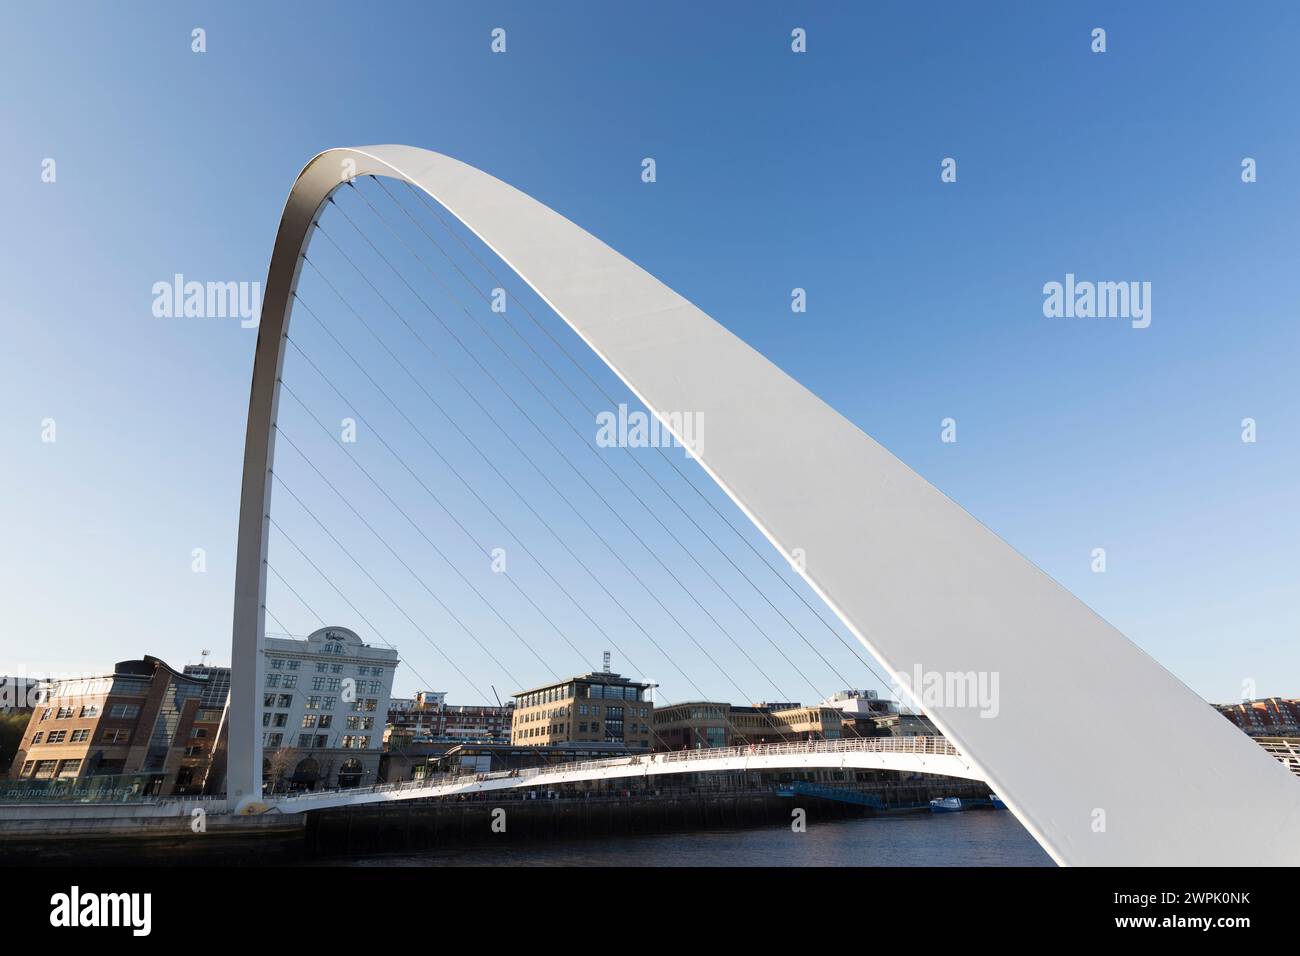 Regno Unito, Newcastle, il ponte Gateshead Millennium che attraversa il fiume Tyne. Foto Stock